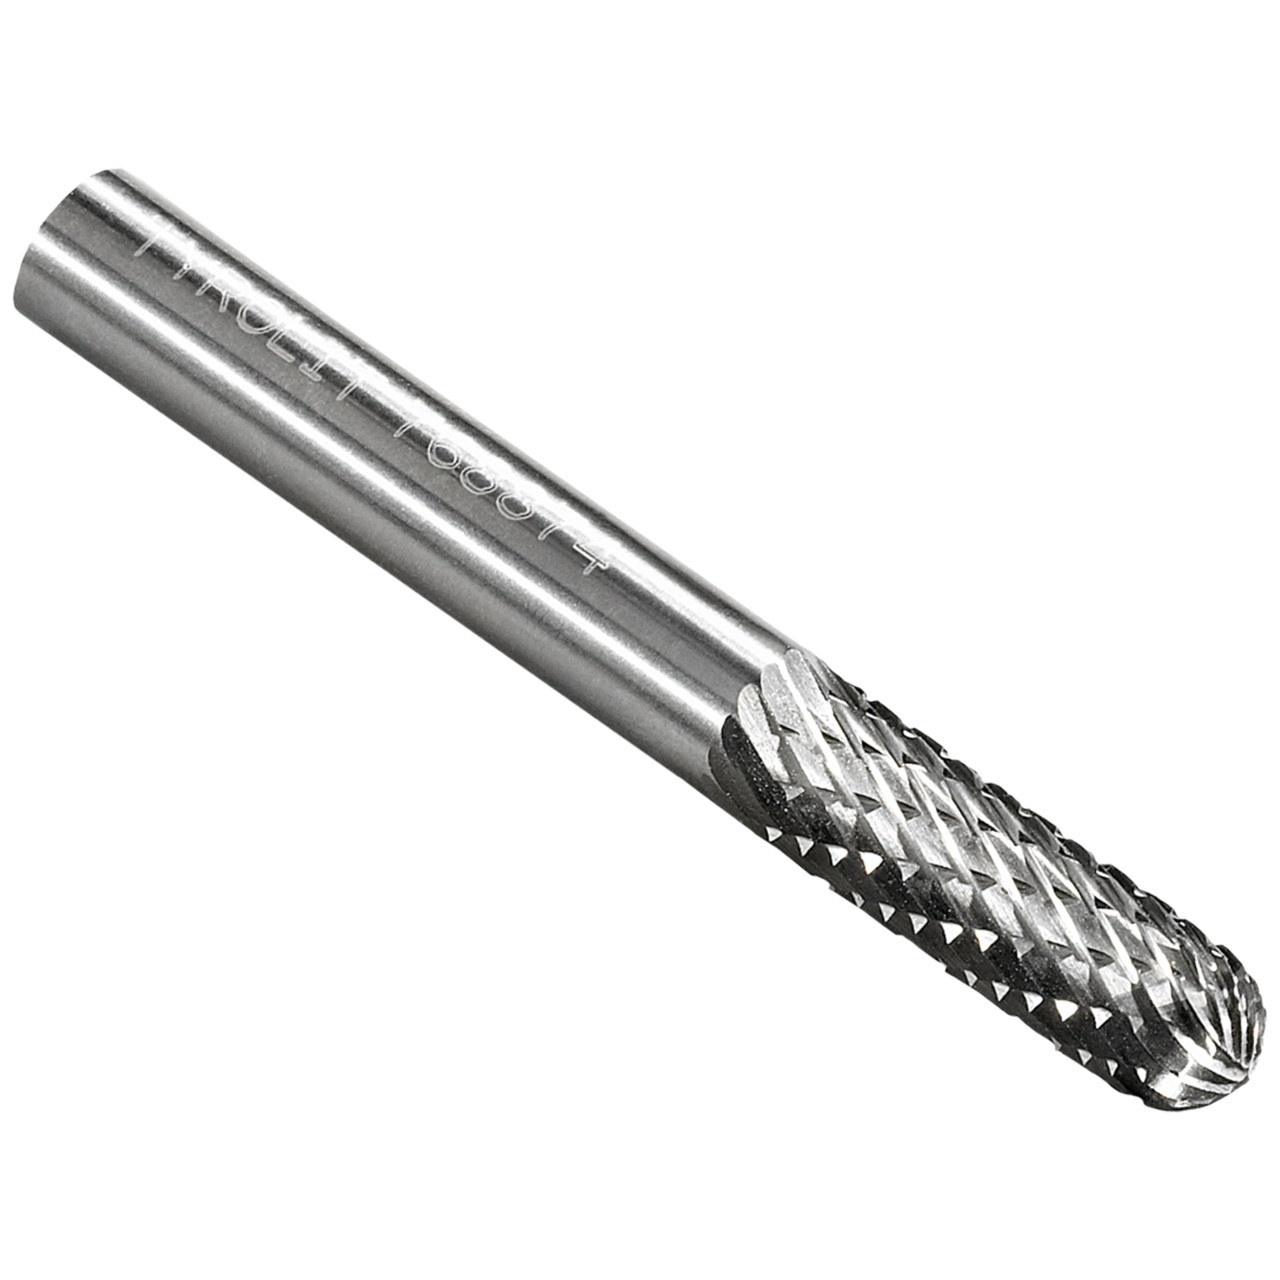 Tyrolit Hardmetalen frees DxT-SxL 12x25-6x70 Voor gietijzer, staal en roestvast staal, vorm: 52WRC - cilindrisch, Art. 766133